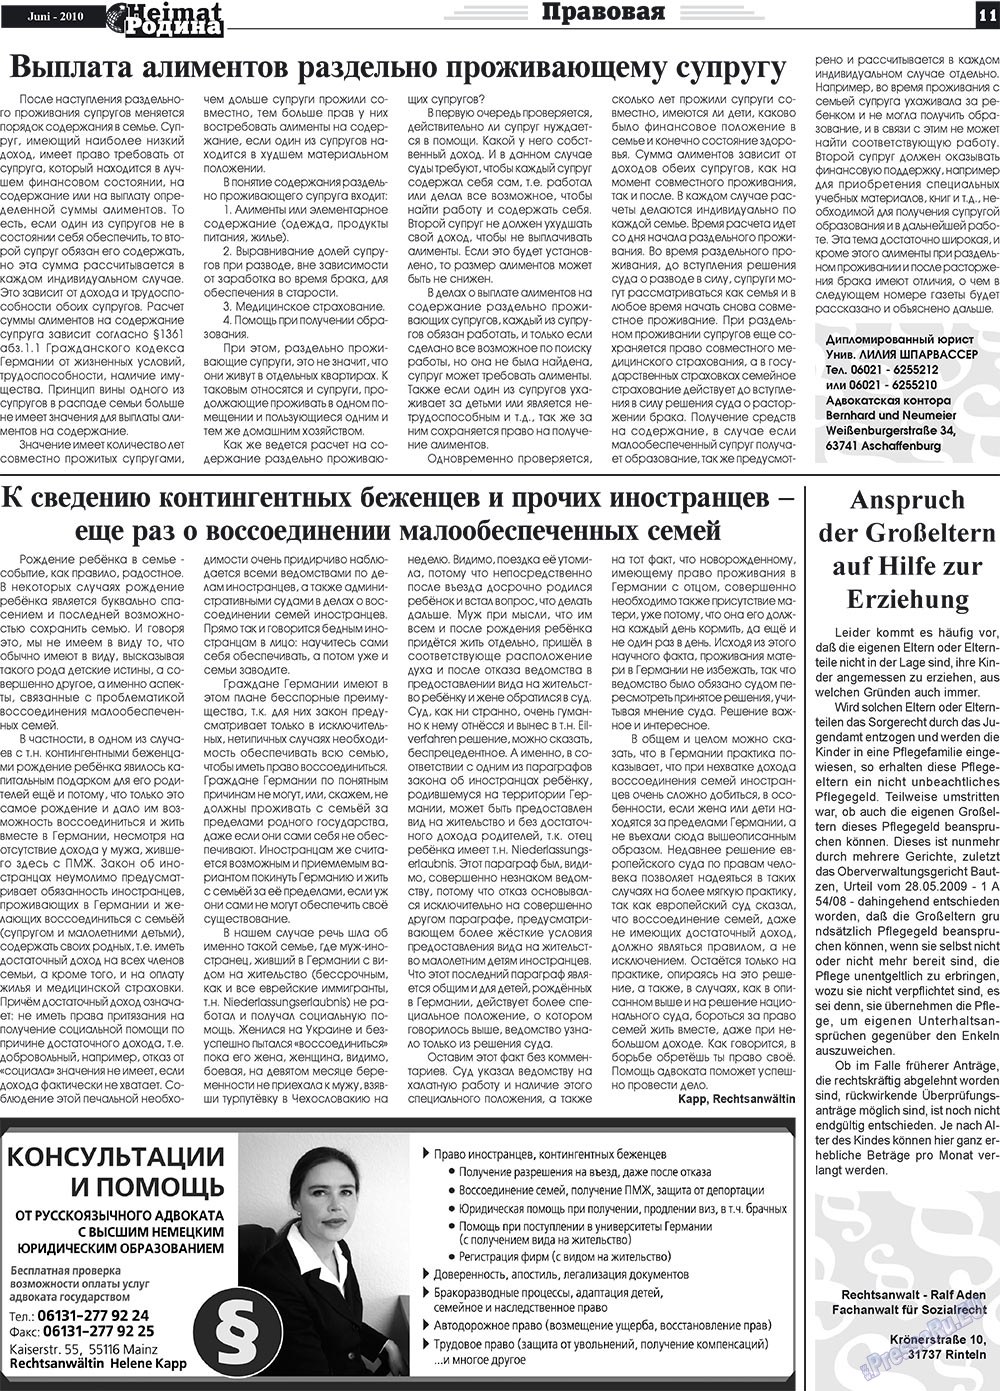 Heimat-Родина (газета). 2010 год, номер 6, стр. 11